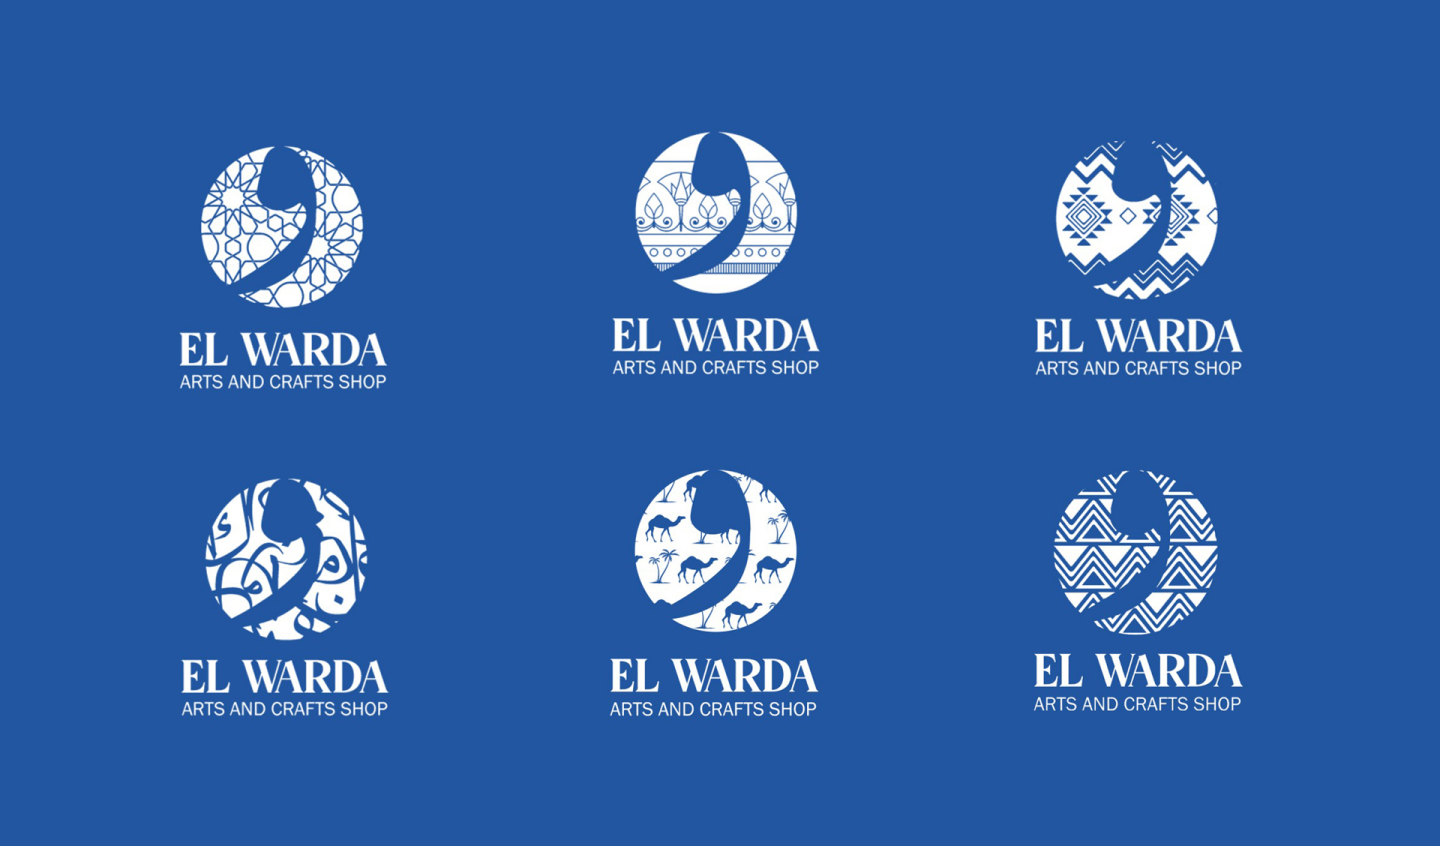 EL WARDA CORPORATE IDENTITY